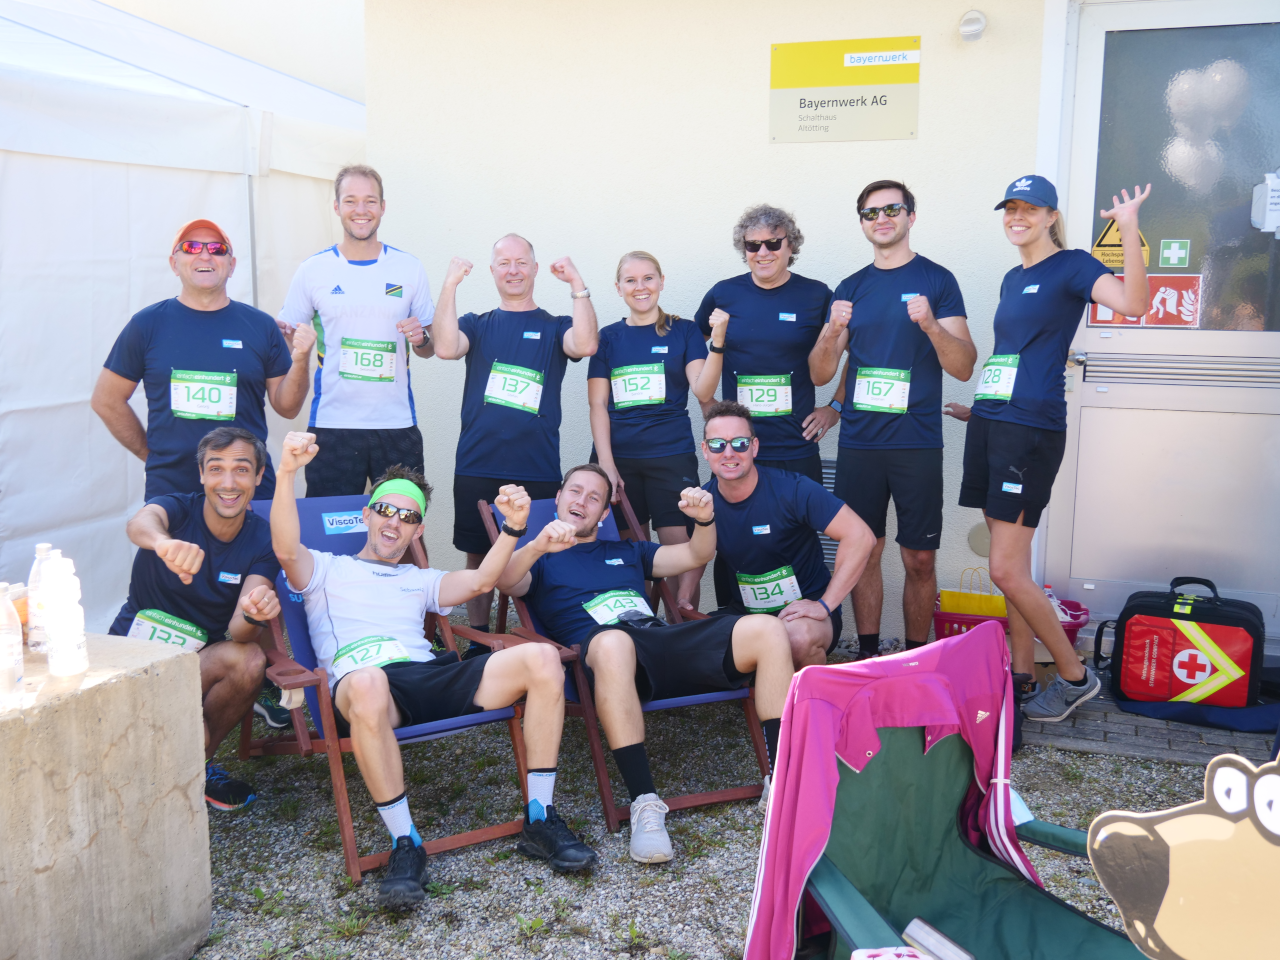 Une grande partie des coureurs de ViscoTec lors de « l’échauffement » pour la course de charité d'Altötting